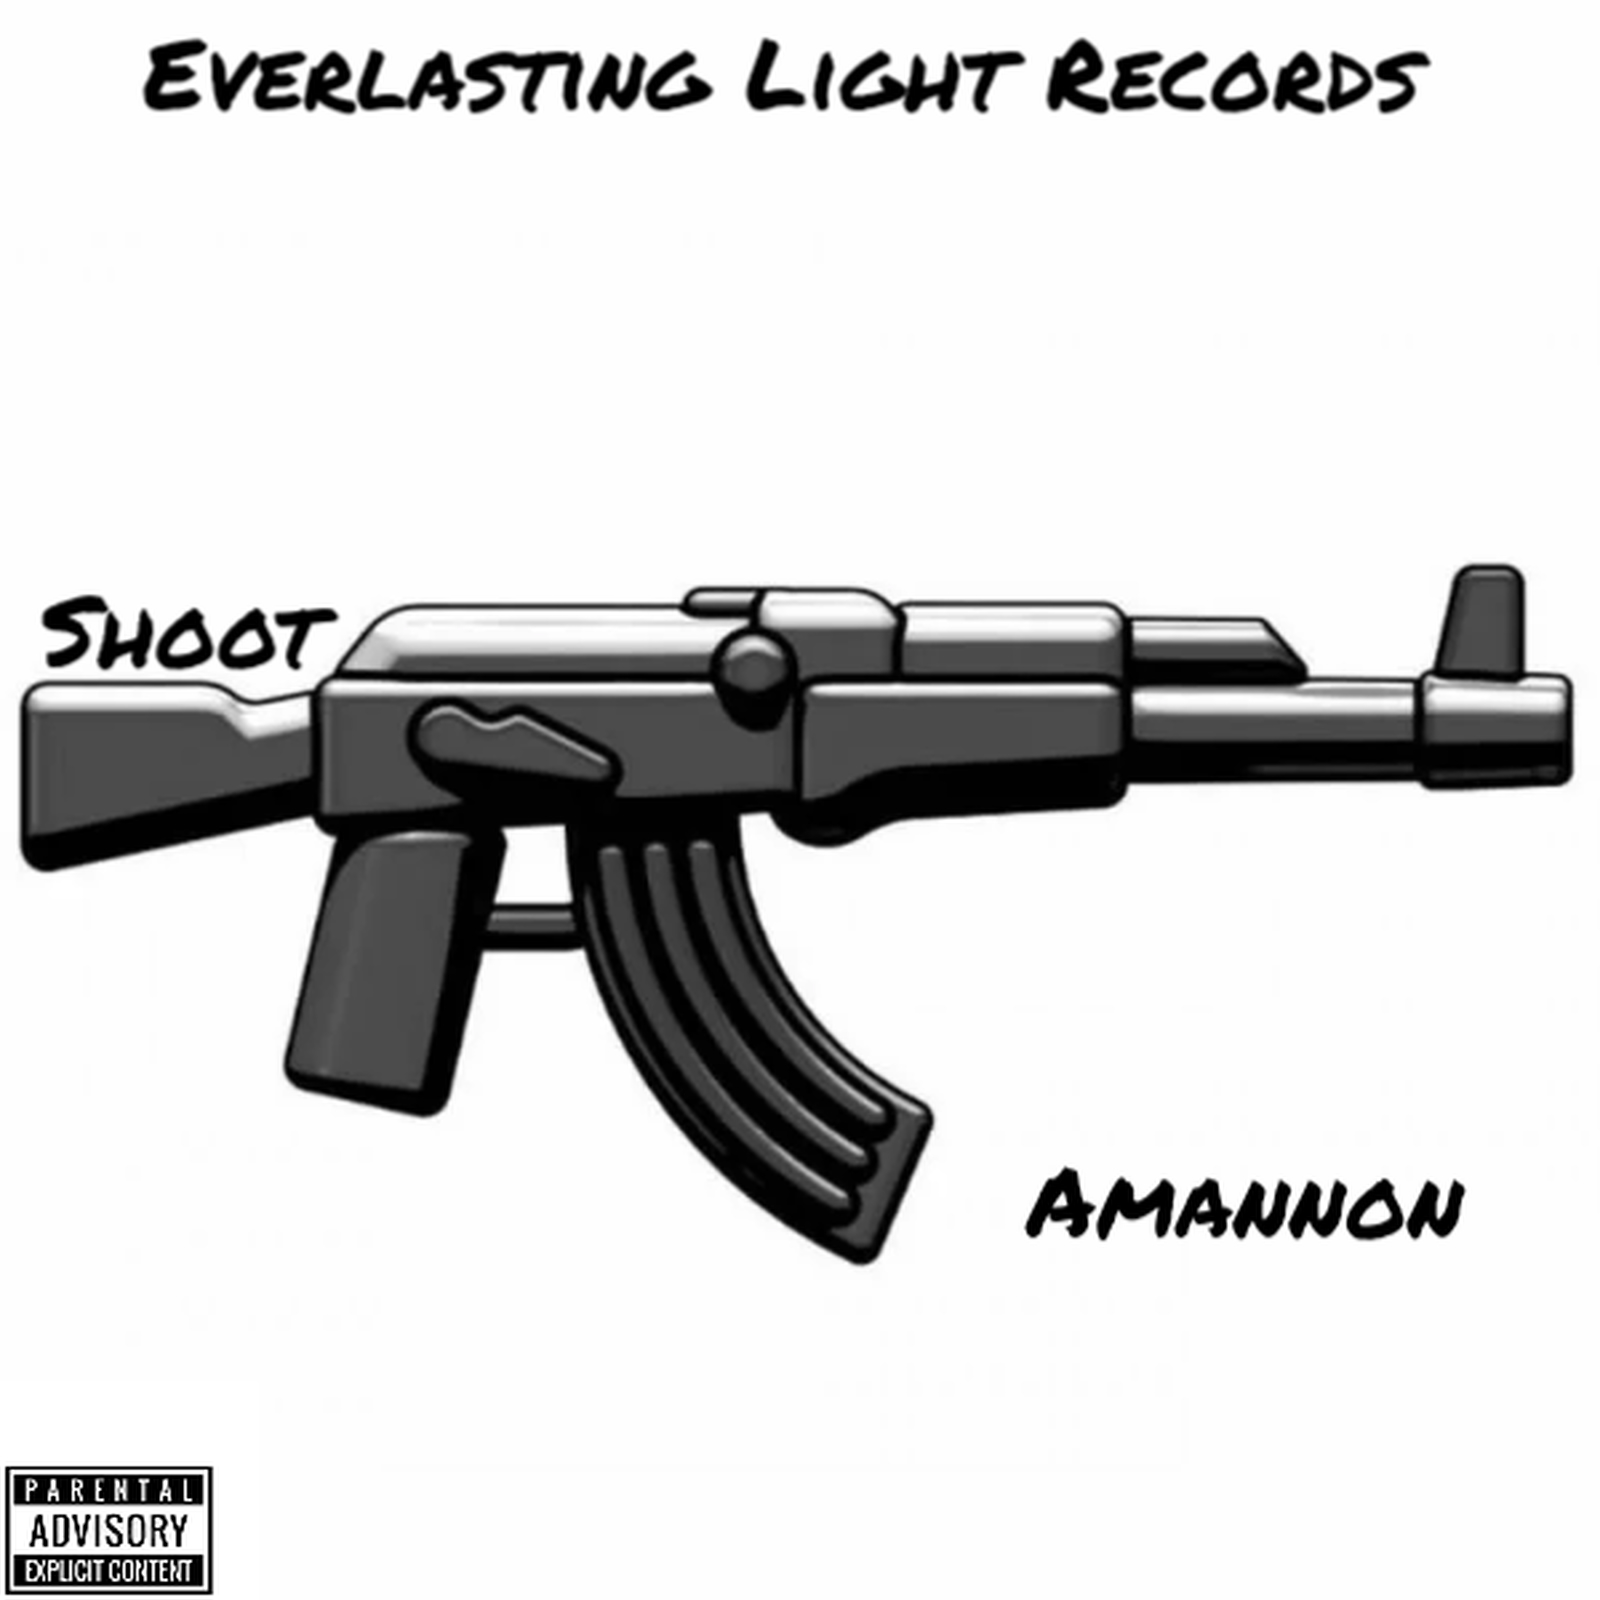 Amannon - shoot